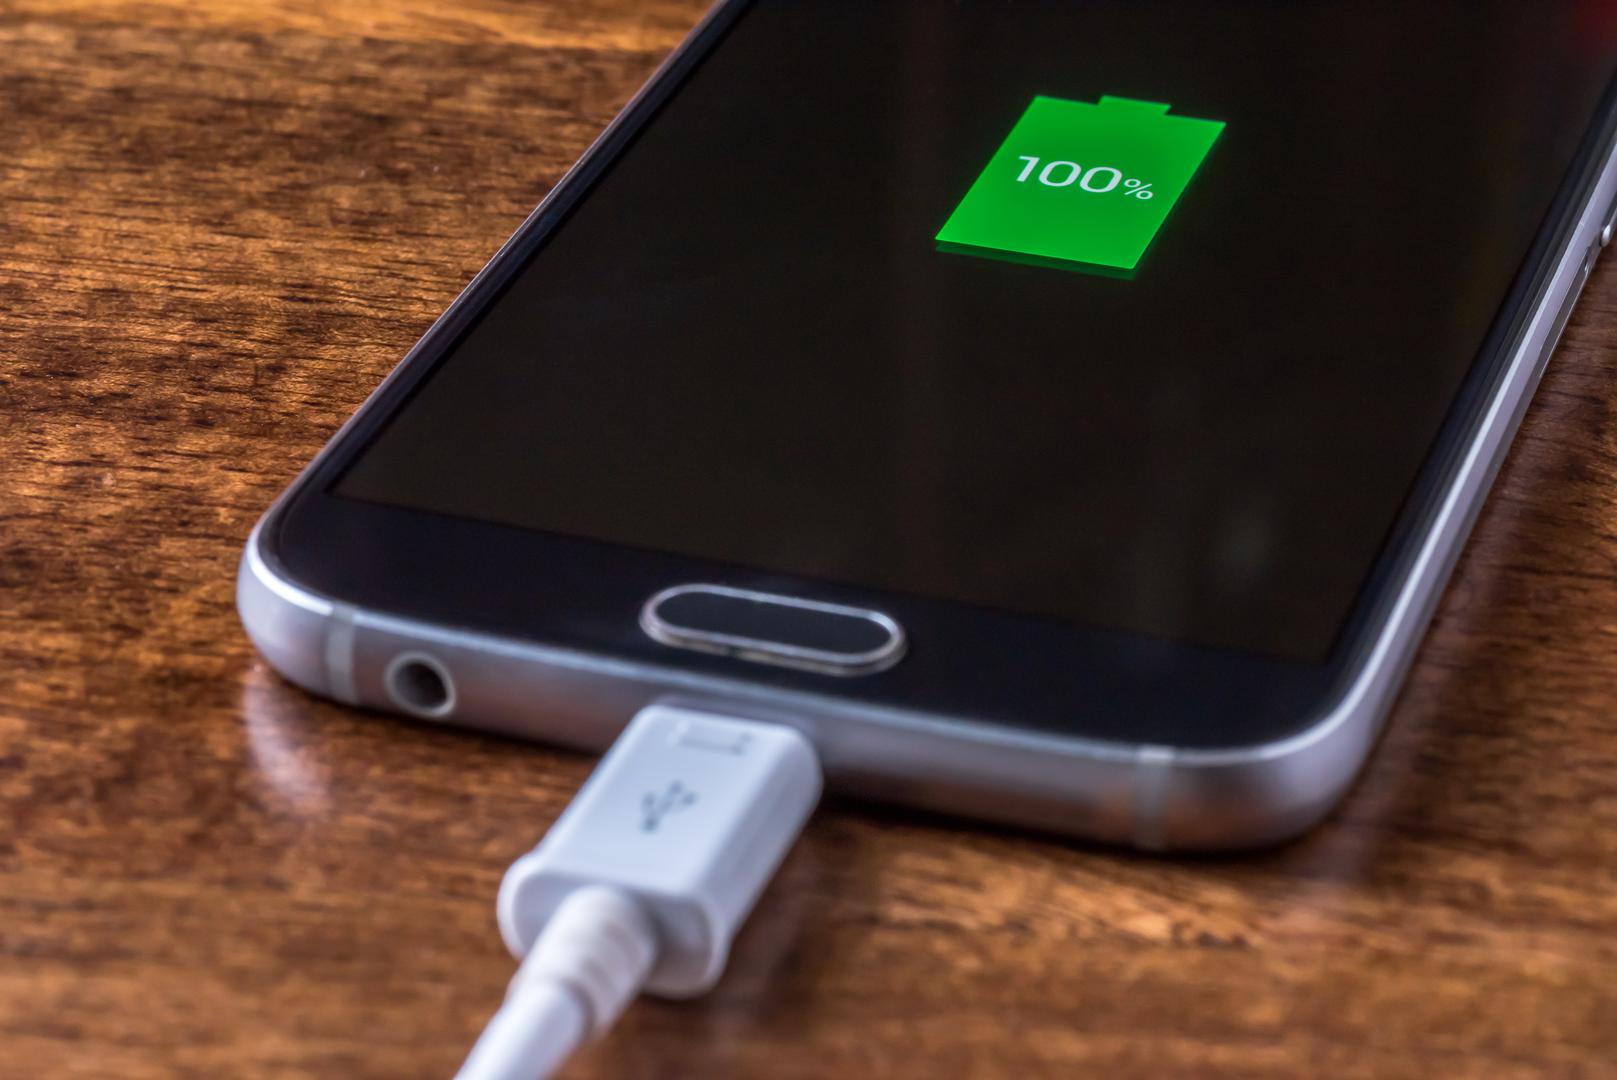 Pravilo 20/80: "Jeste li znali da je stalno punjenje telefona od 0% do 100% zapravo užasno za vašu bateriju? Ovo i opetovano punjenje i pražnjenje vašeg telefona, poznato i kao ciklusi punjenja, značajno utječe na životni vijek baterije. Zapravo je najbolje da vaš uređaj bude napunjen između 20% i 80% - posebno s iPhone uređajima koji koriste litij-ionske baterije. Ako imate iPhone s iOS-om 13 ili novijim, možete uključiti Appleovu značajku Optimizirano punjenje baterije, koja se može pronaći u Postavkama – Baterija. Uz to će se vaš telefon prestati puniti na 80%. Uključivanje ove značajke omogućuje vašem telefonu da uči iz vaših svakodnevnih navika punjenja kako bi poboljšao životni vijek baterije", objasnio je stručnjak.